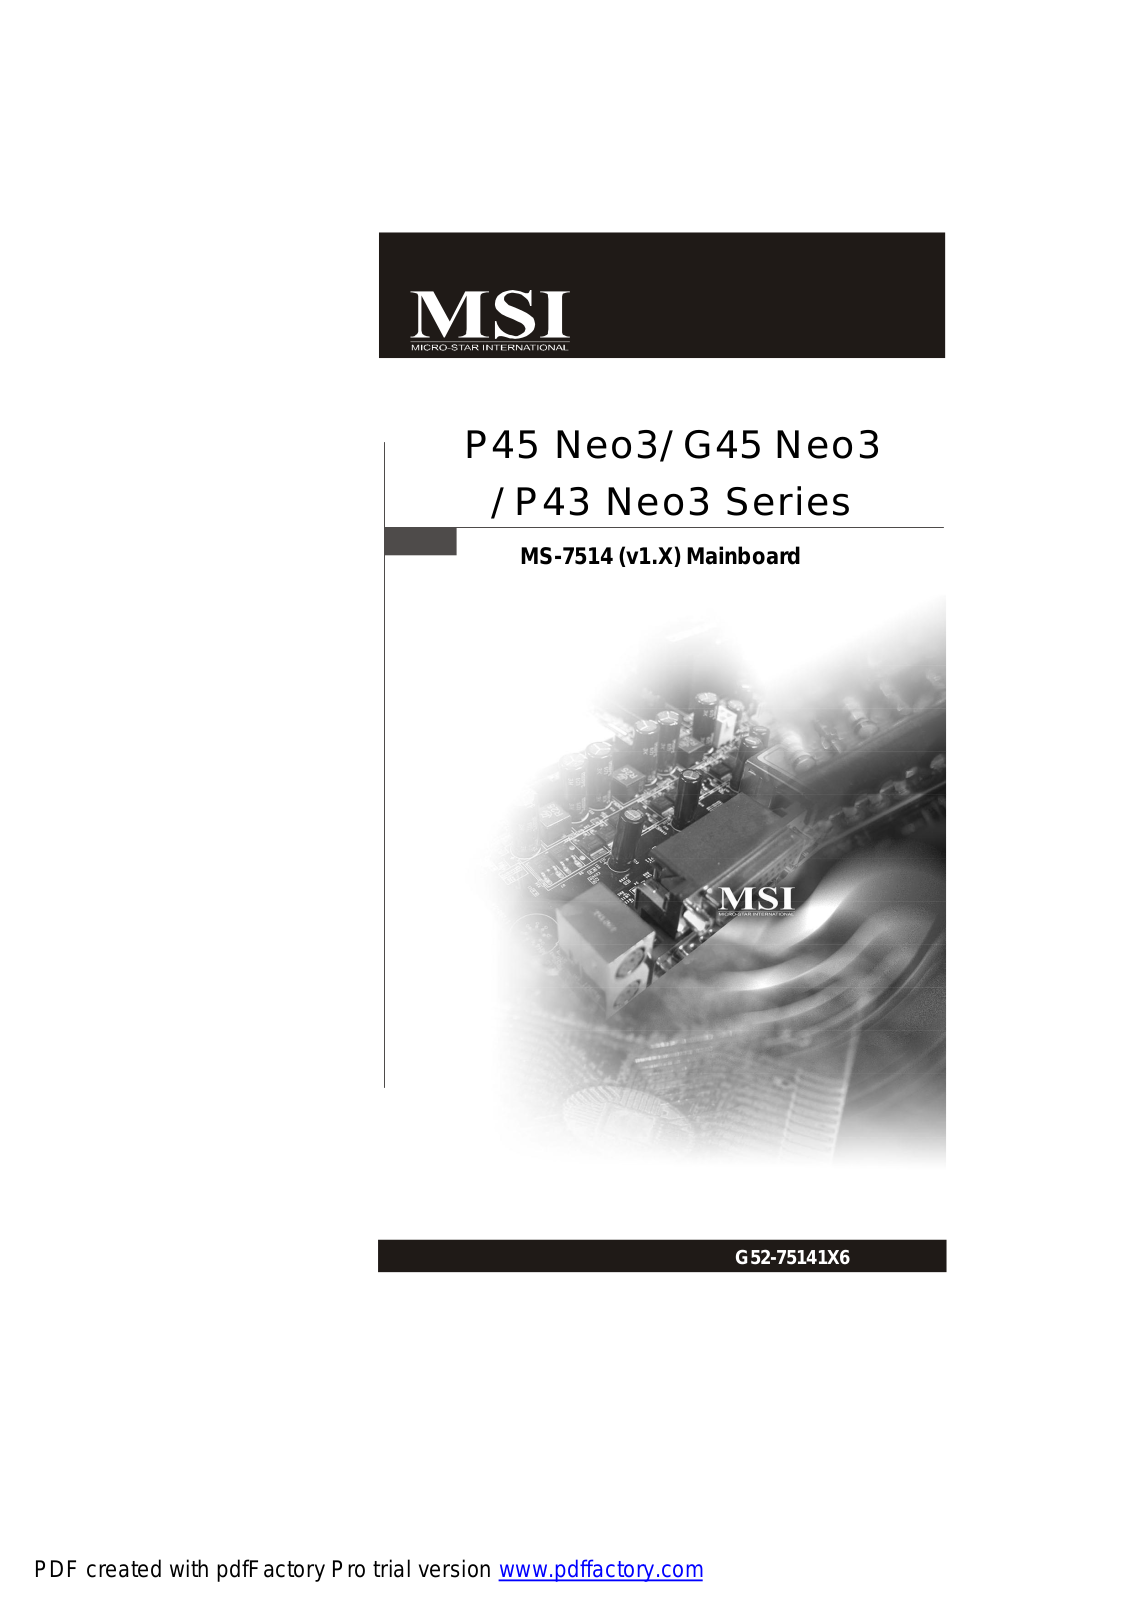 MSI G45 NEO3, P43 NEO3, P45 NEO3 User Manual